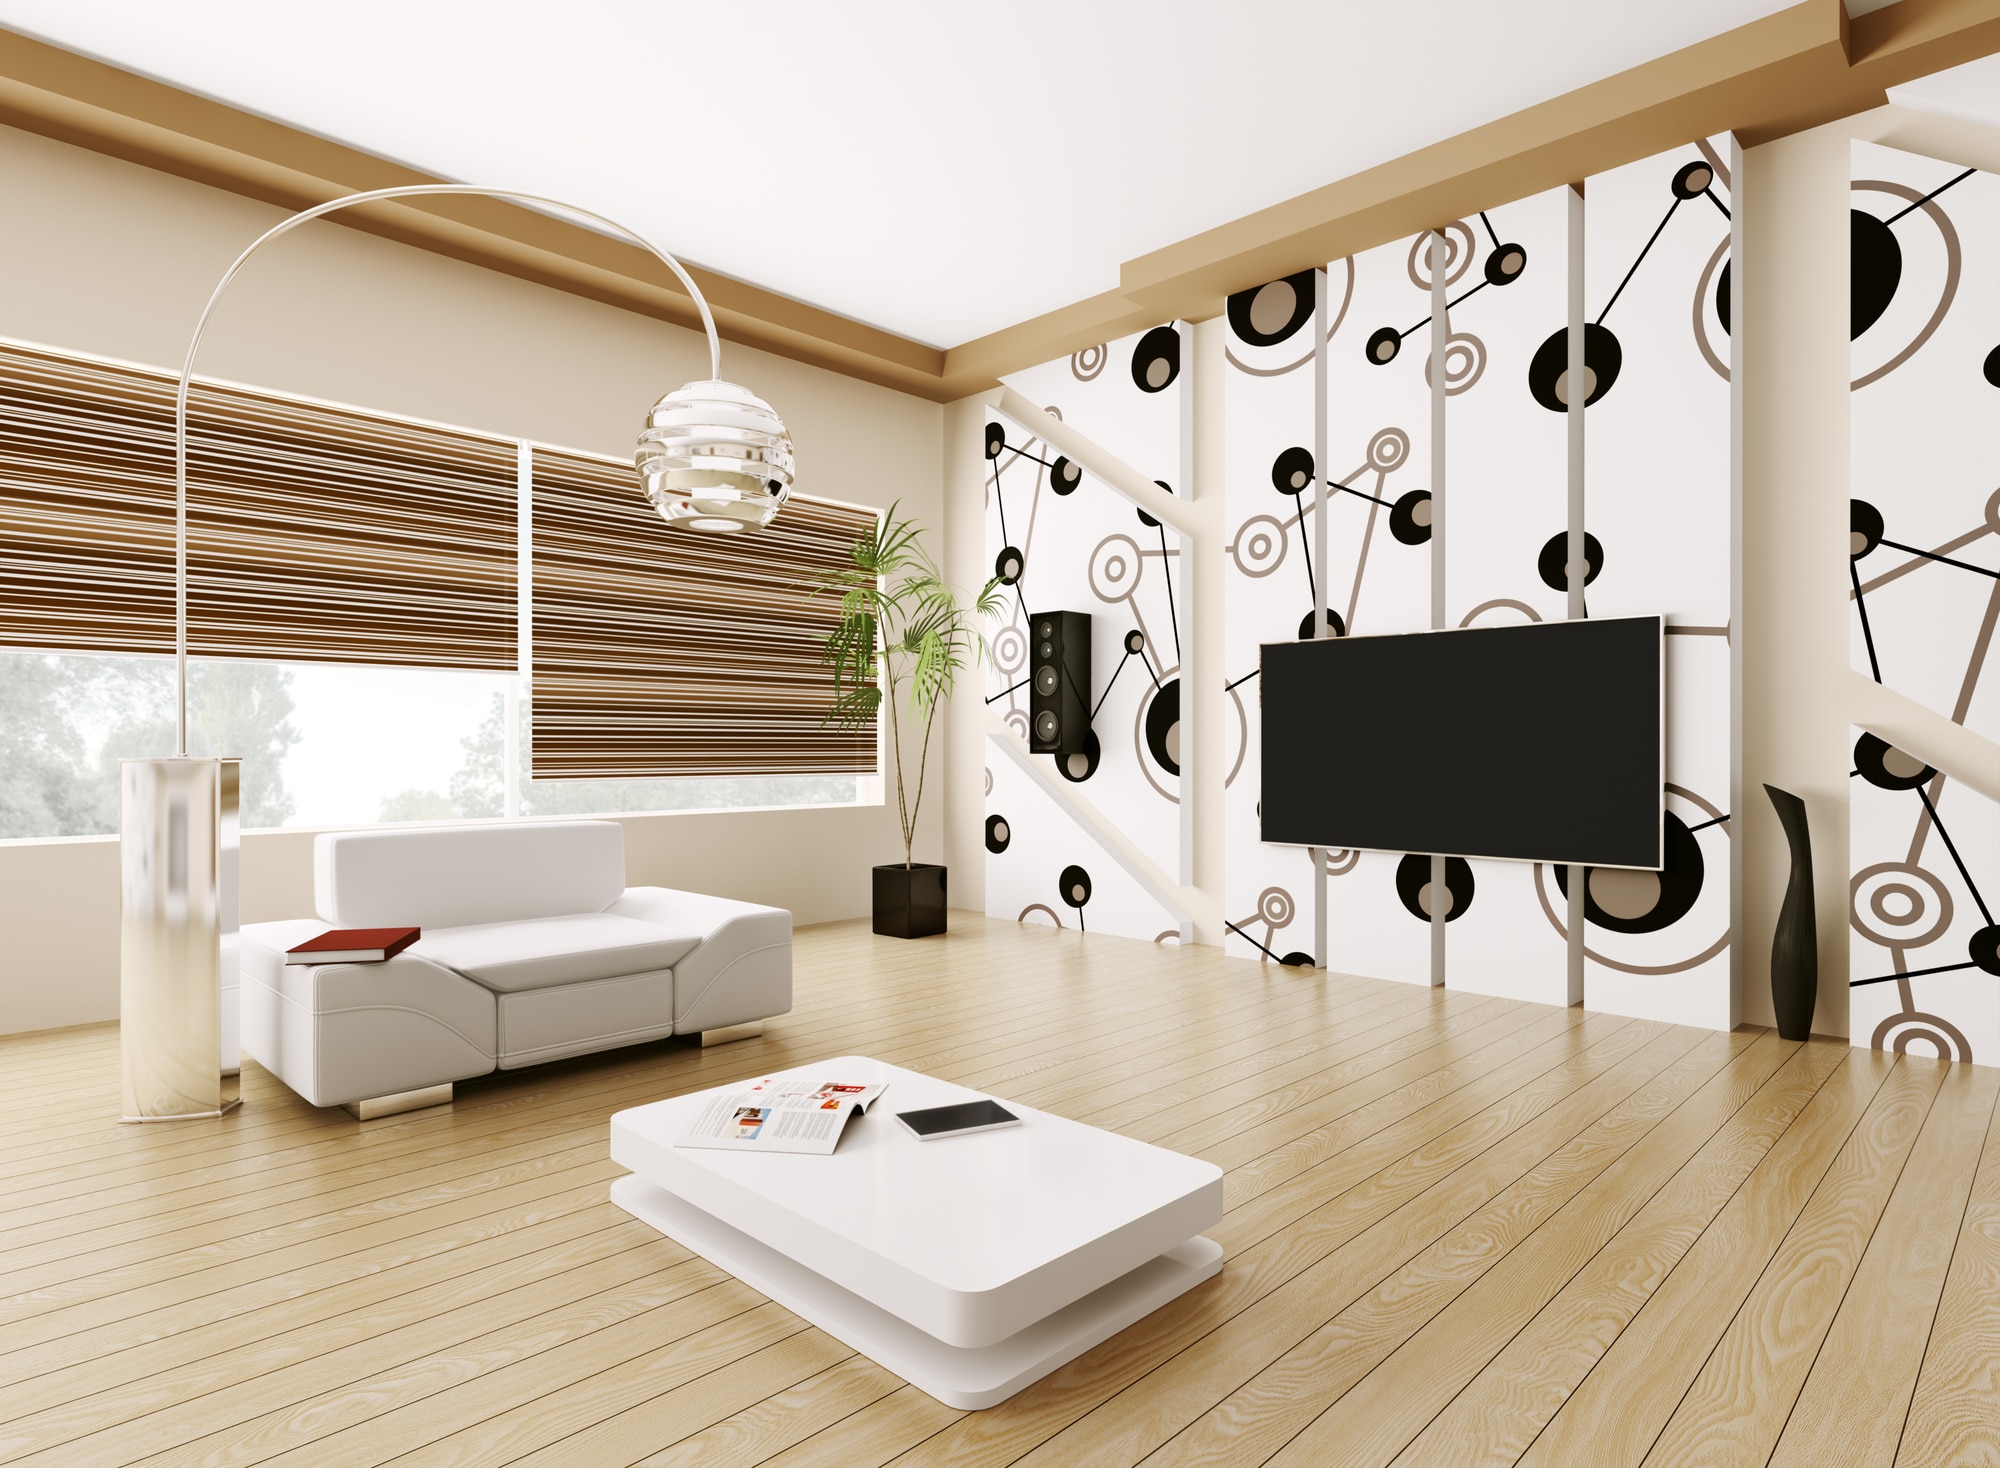 Interior of mid-century modern living room 3d render